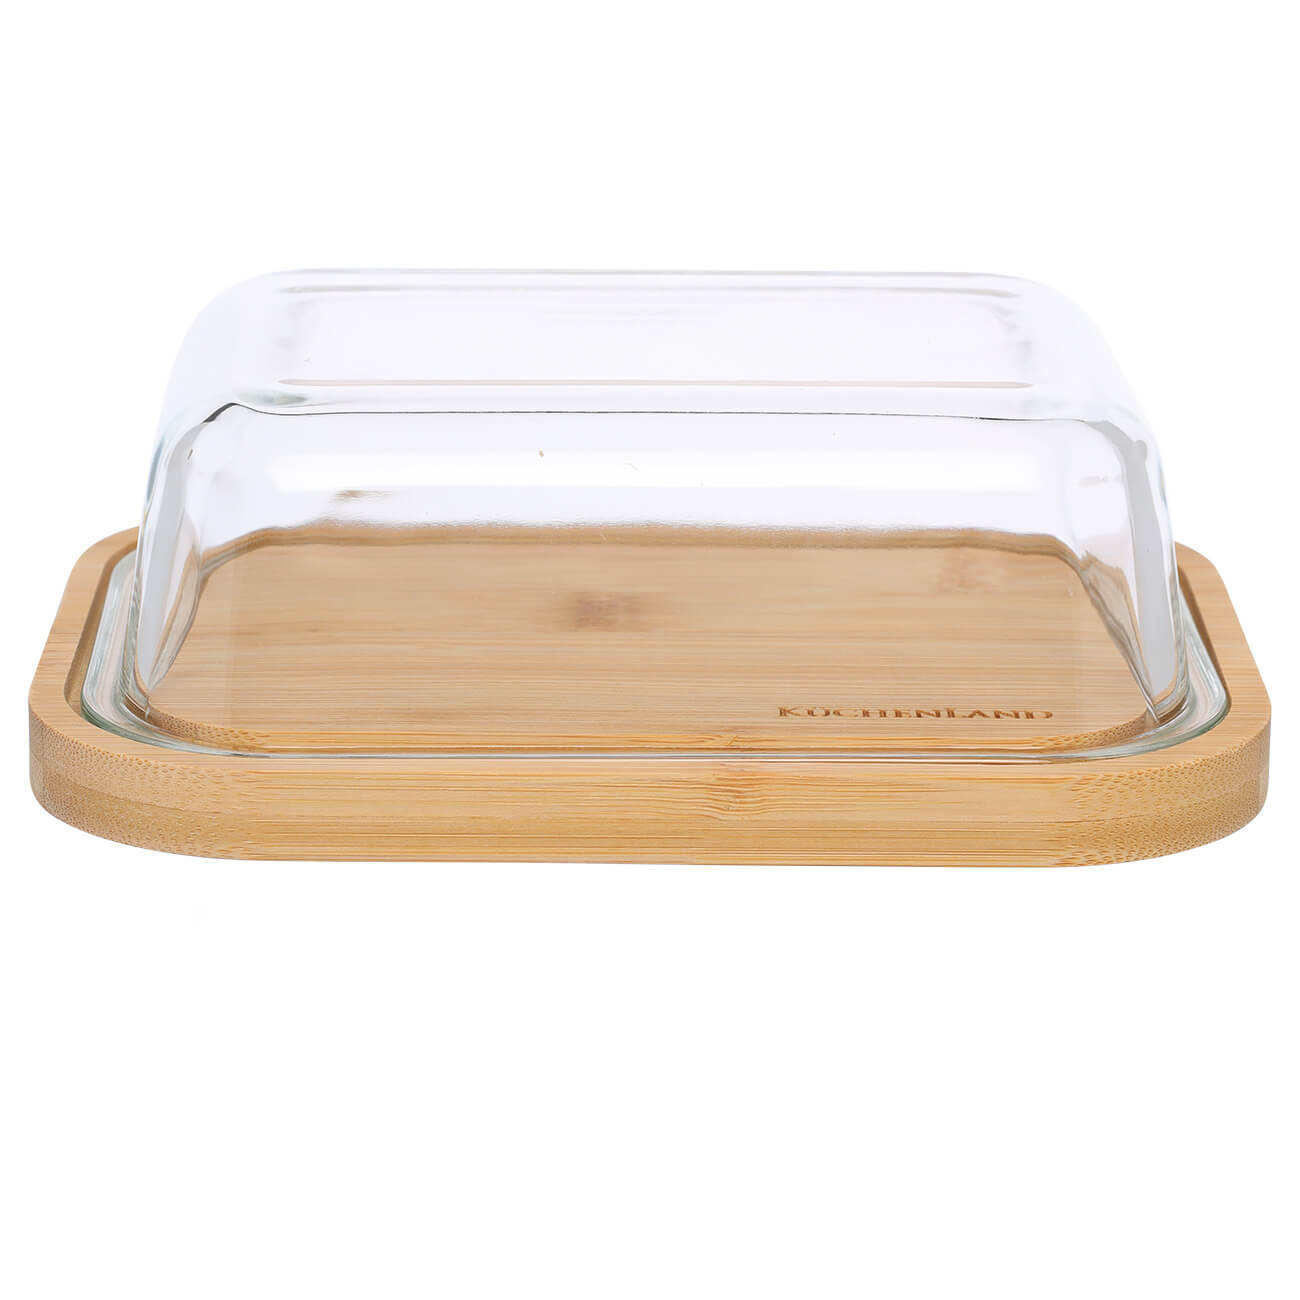 Butter dish, 18 cm, bamboo / glass, rectangular, Home made изображение № 1